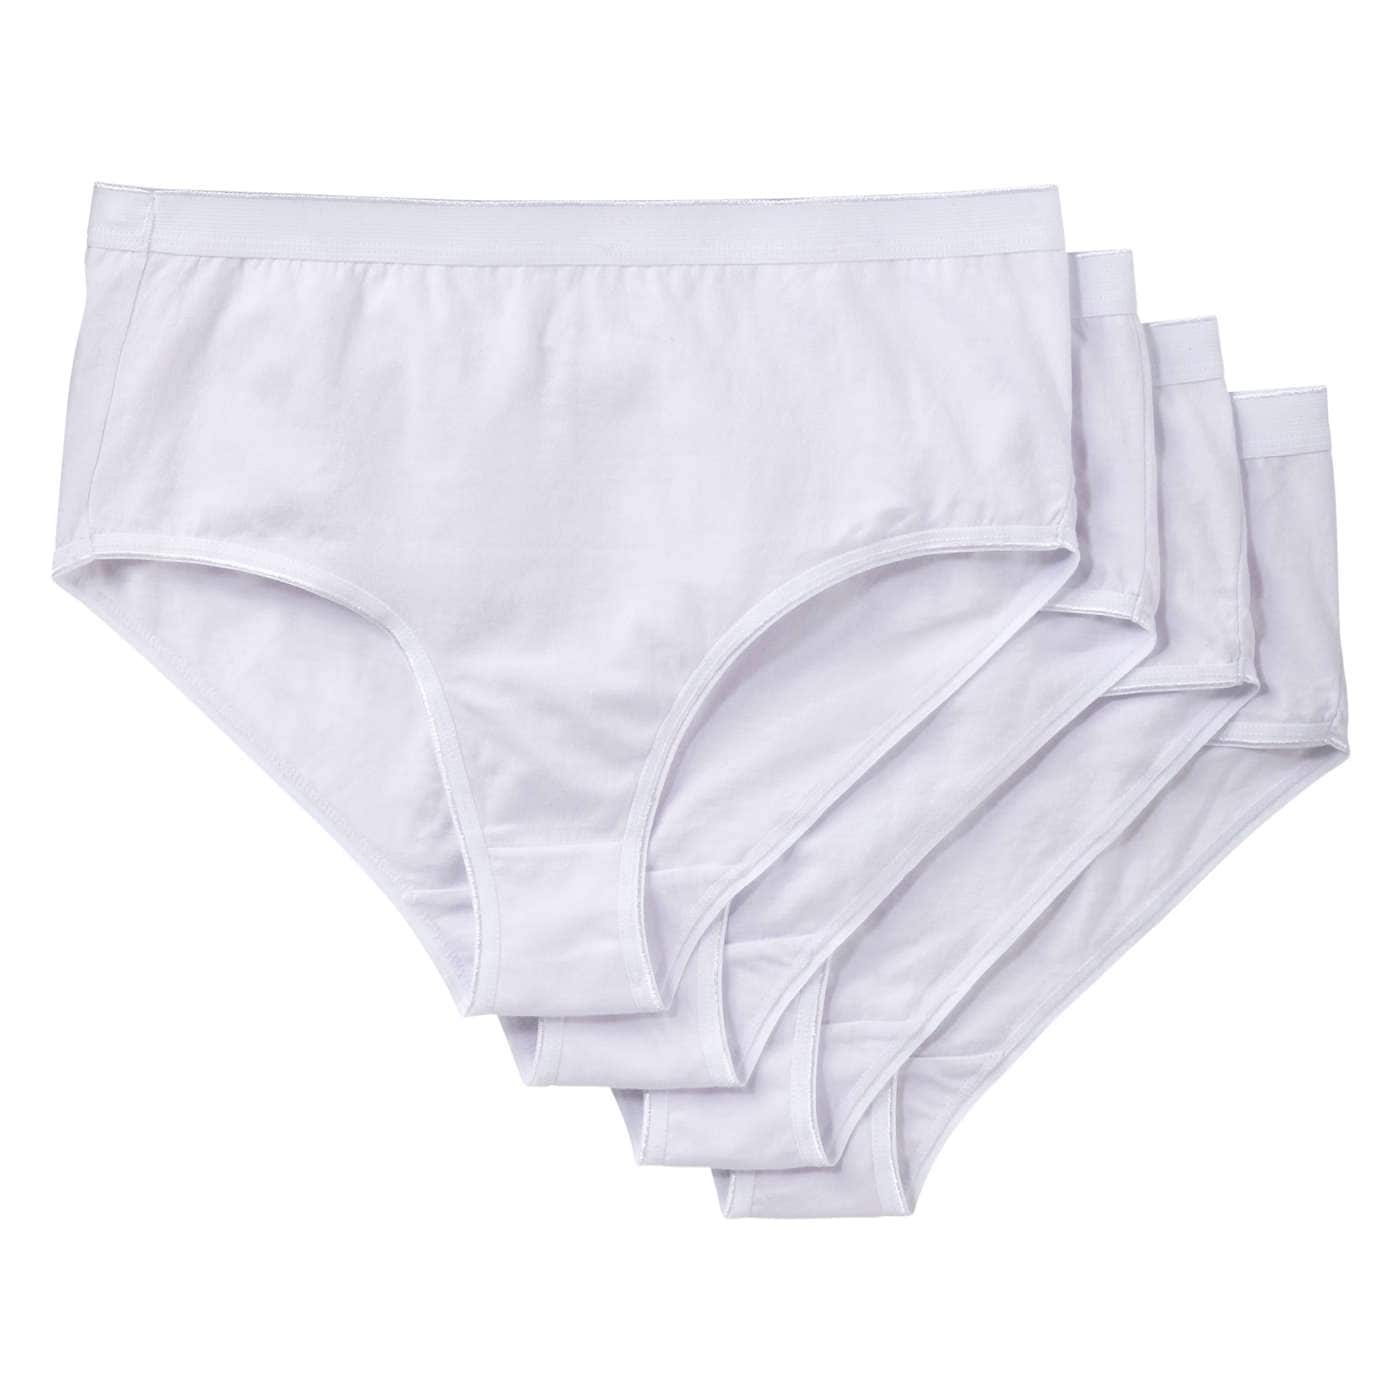  Girls Underwear 100% Cotton Underwear For Girls